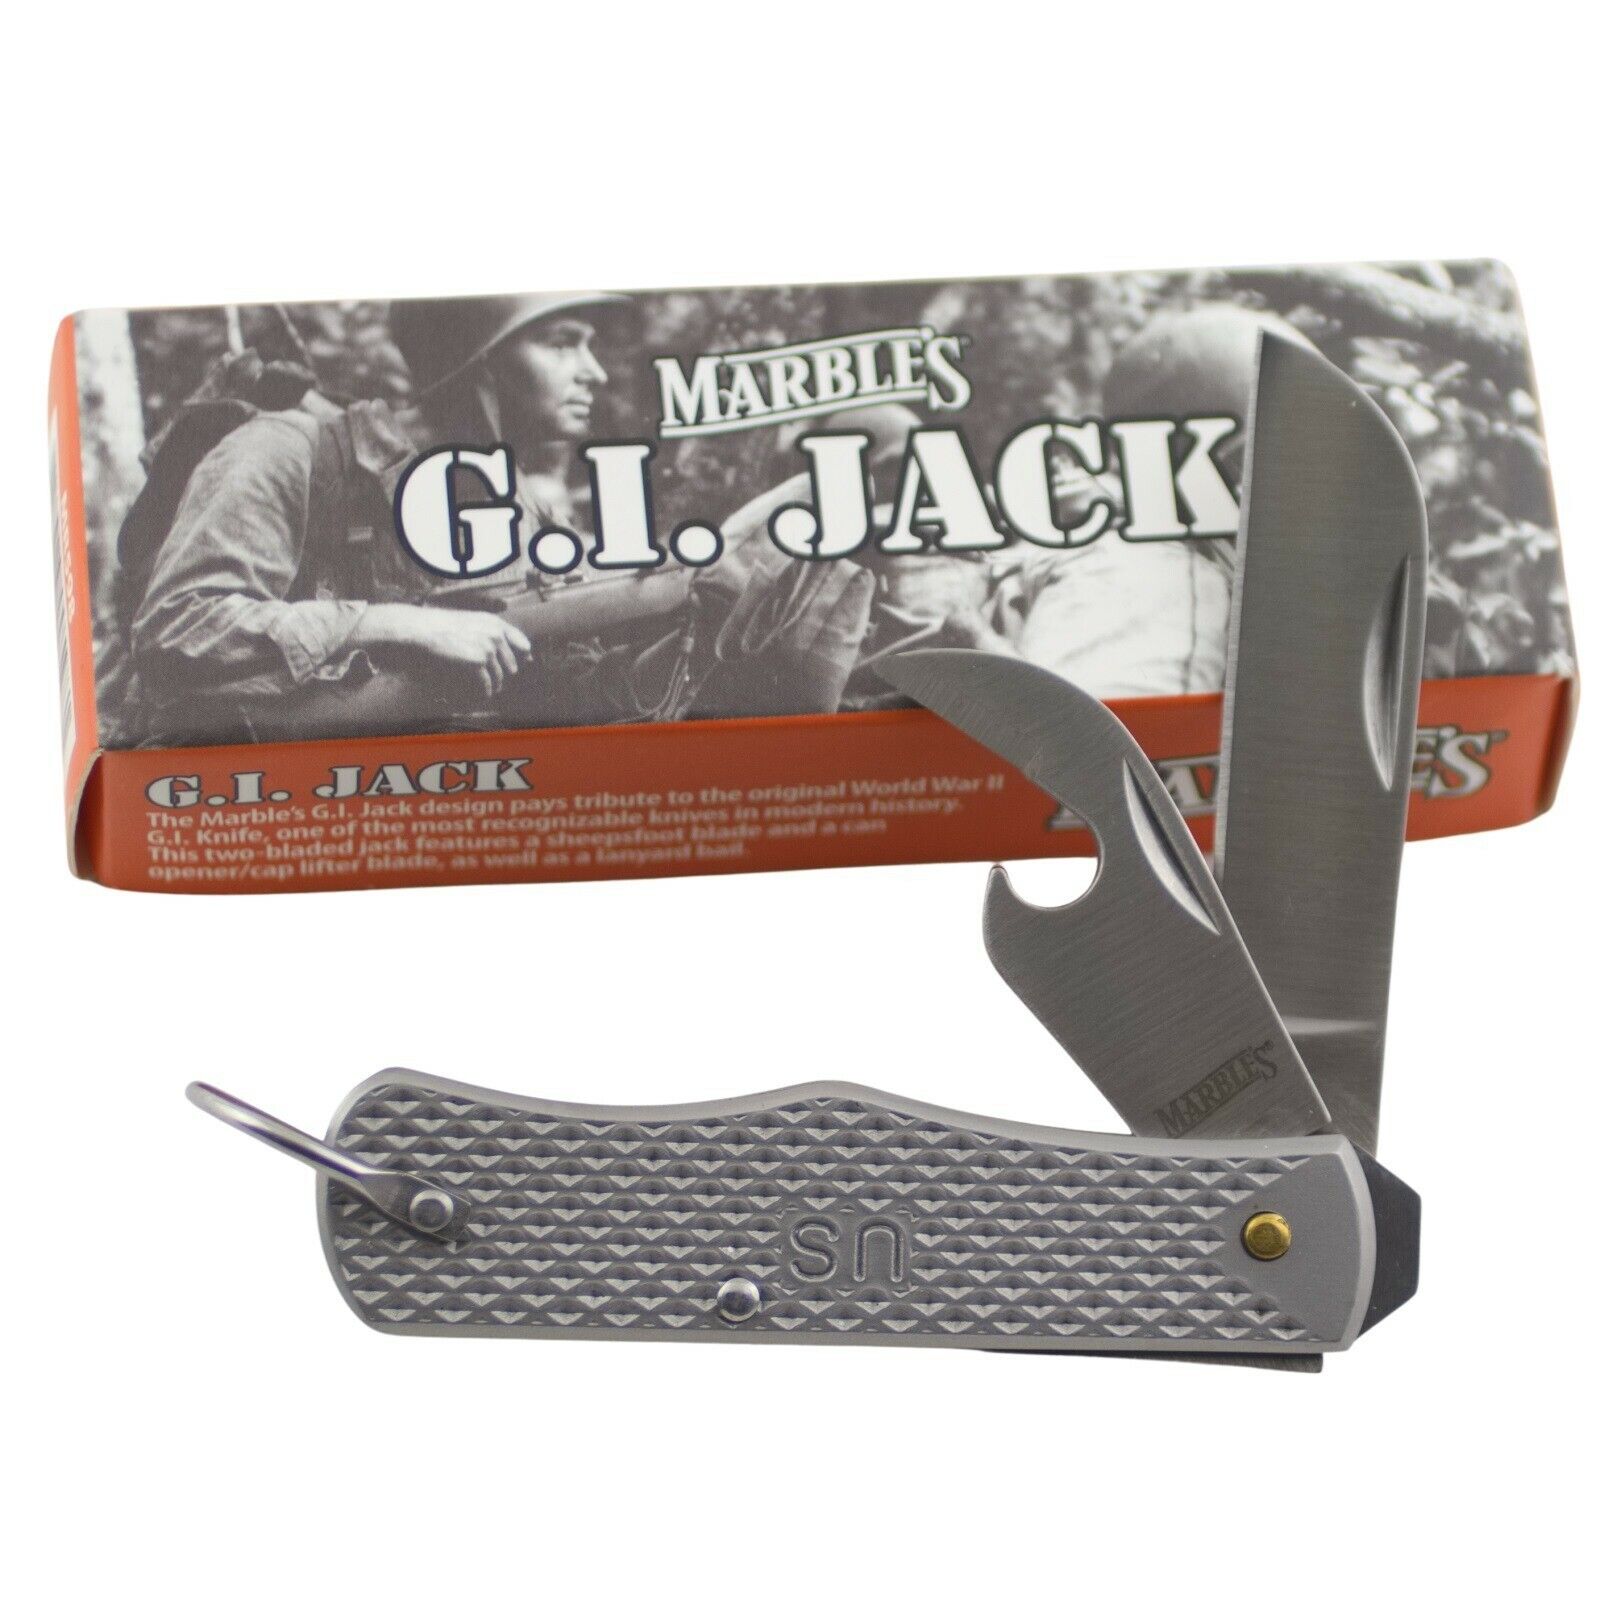 Marbles G.I. Jack Folder Pocket Knife Bail Bottle Can Opener MR598